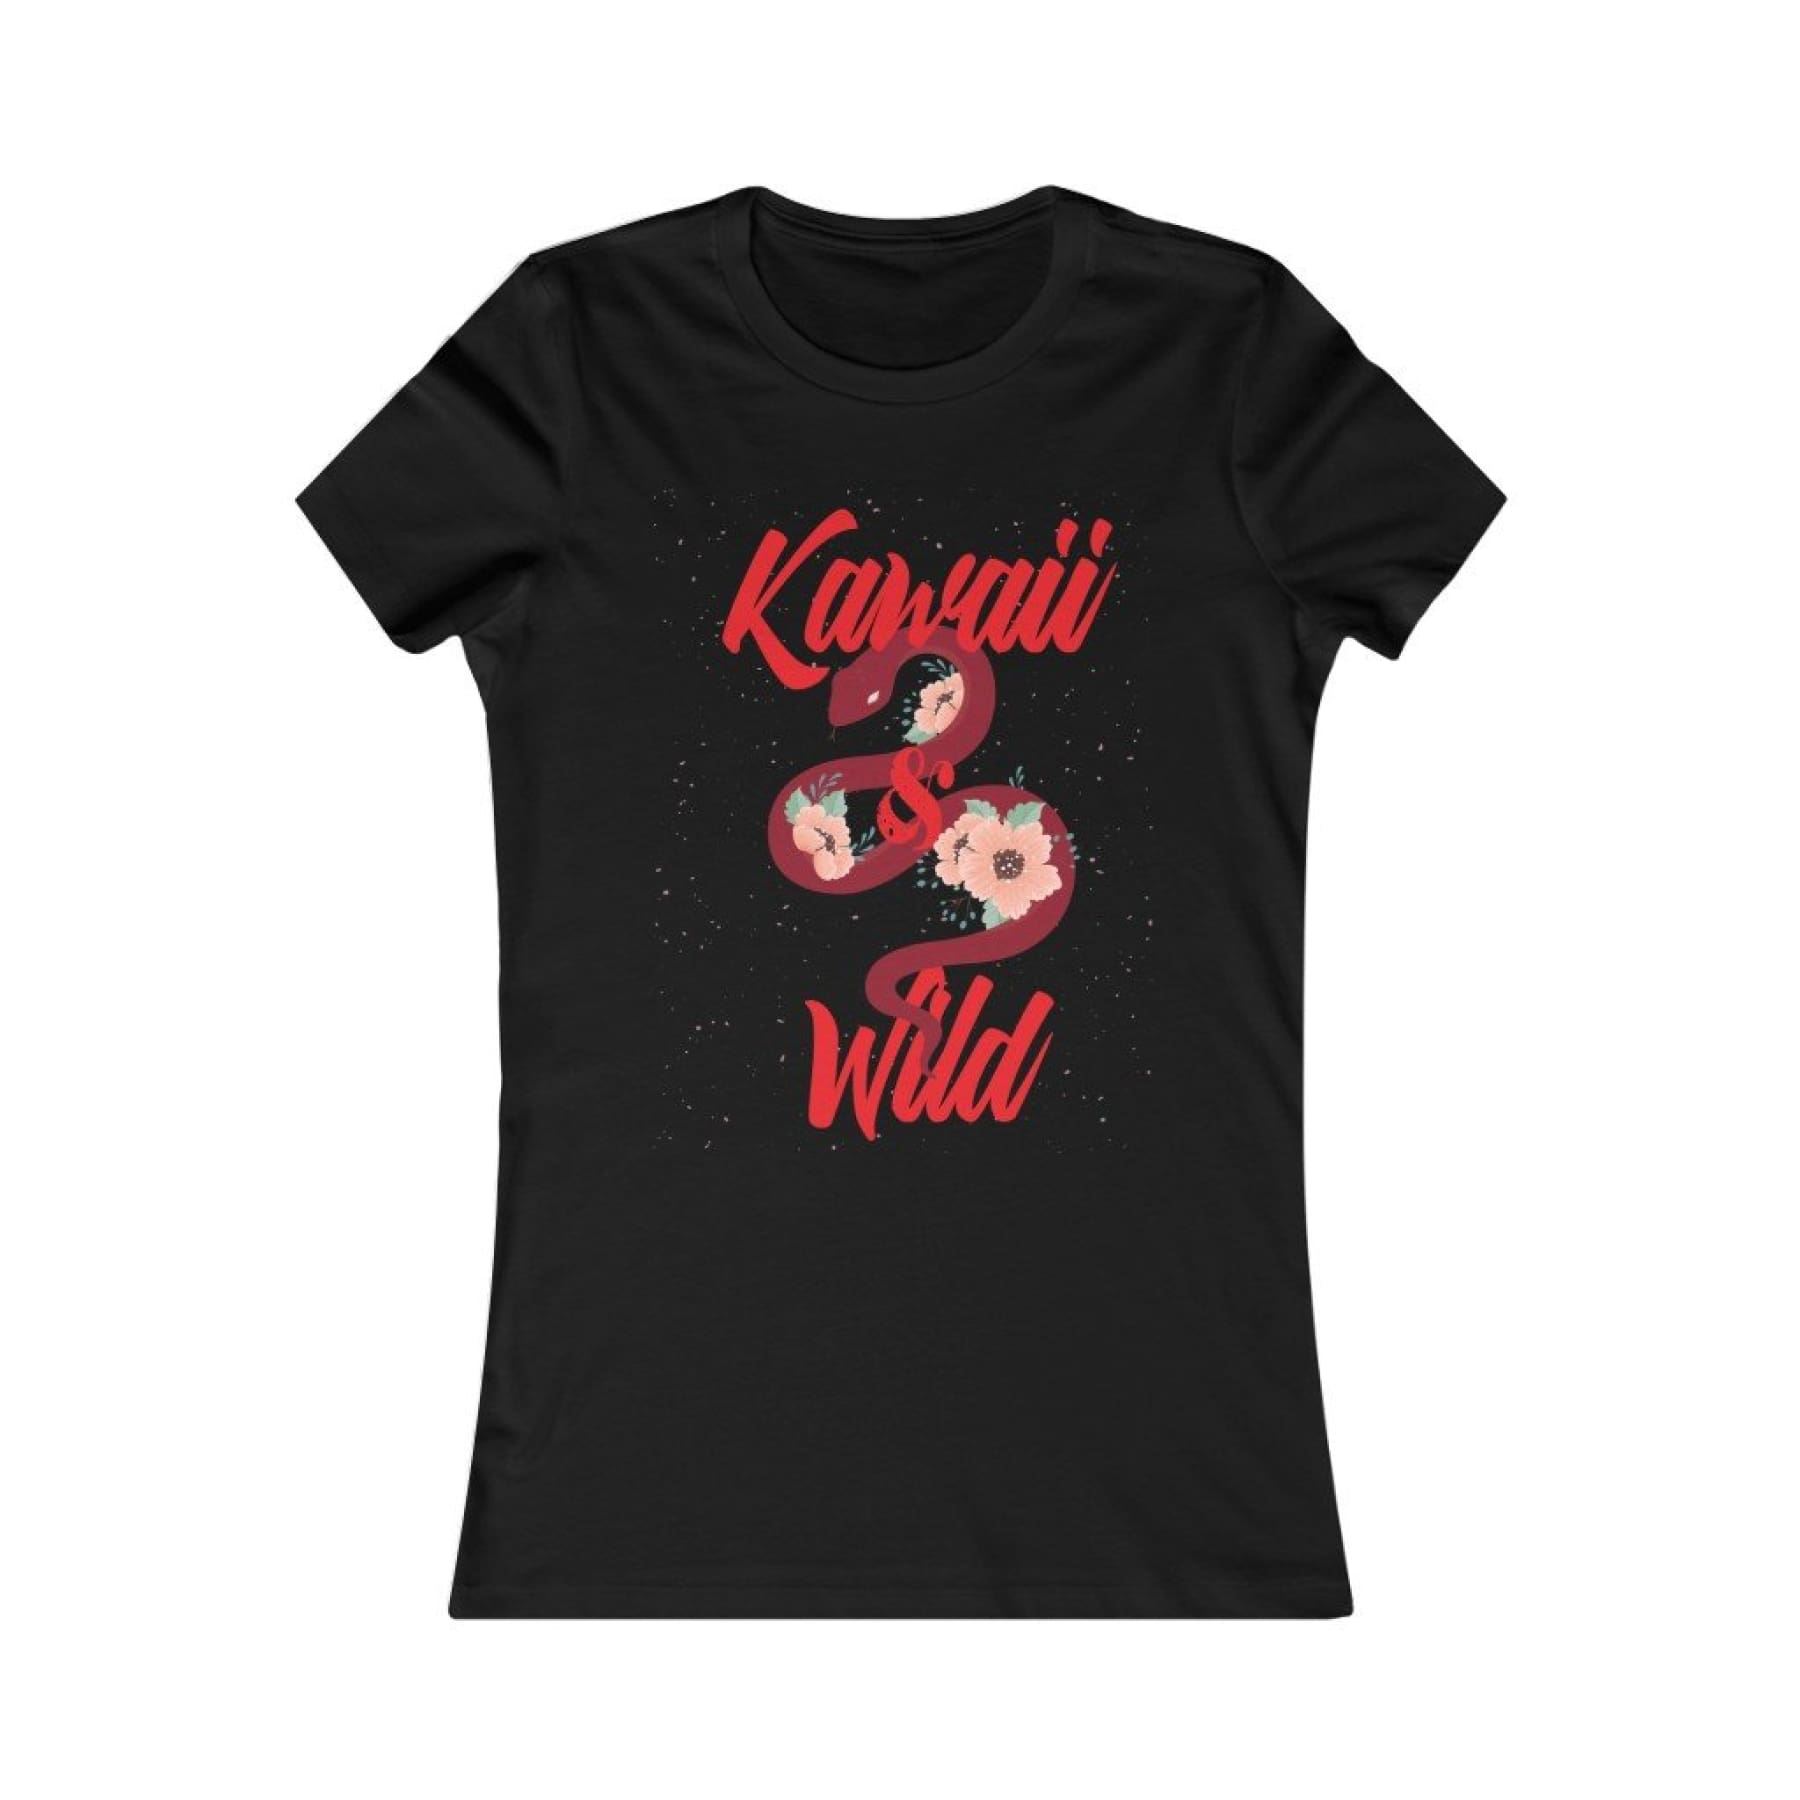 Kawaii and Wild Women Tee